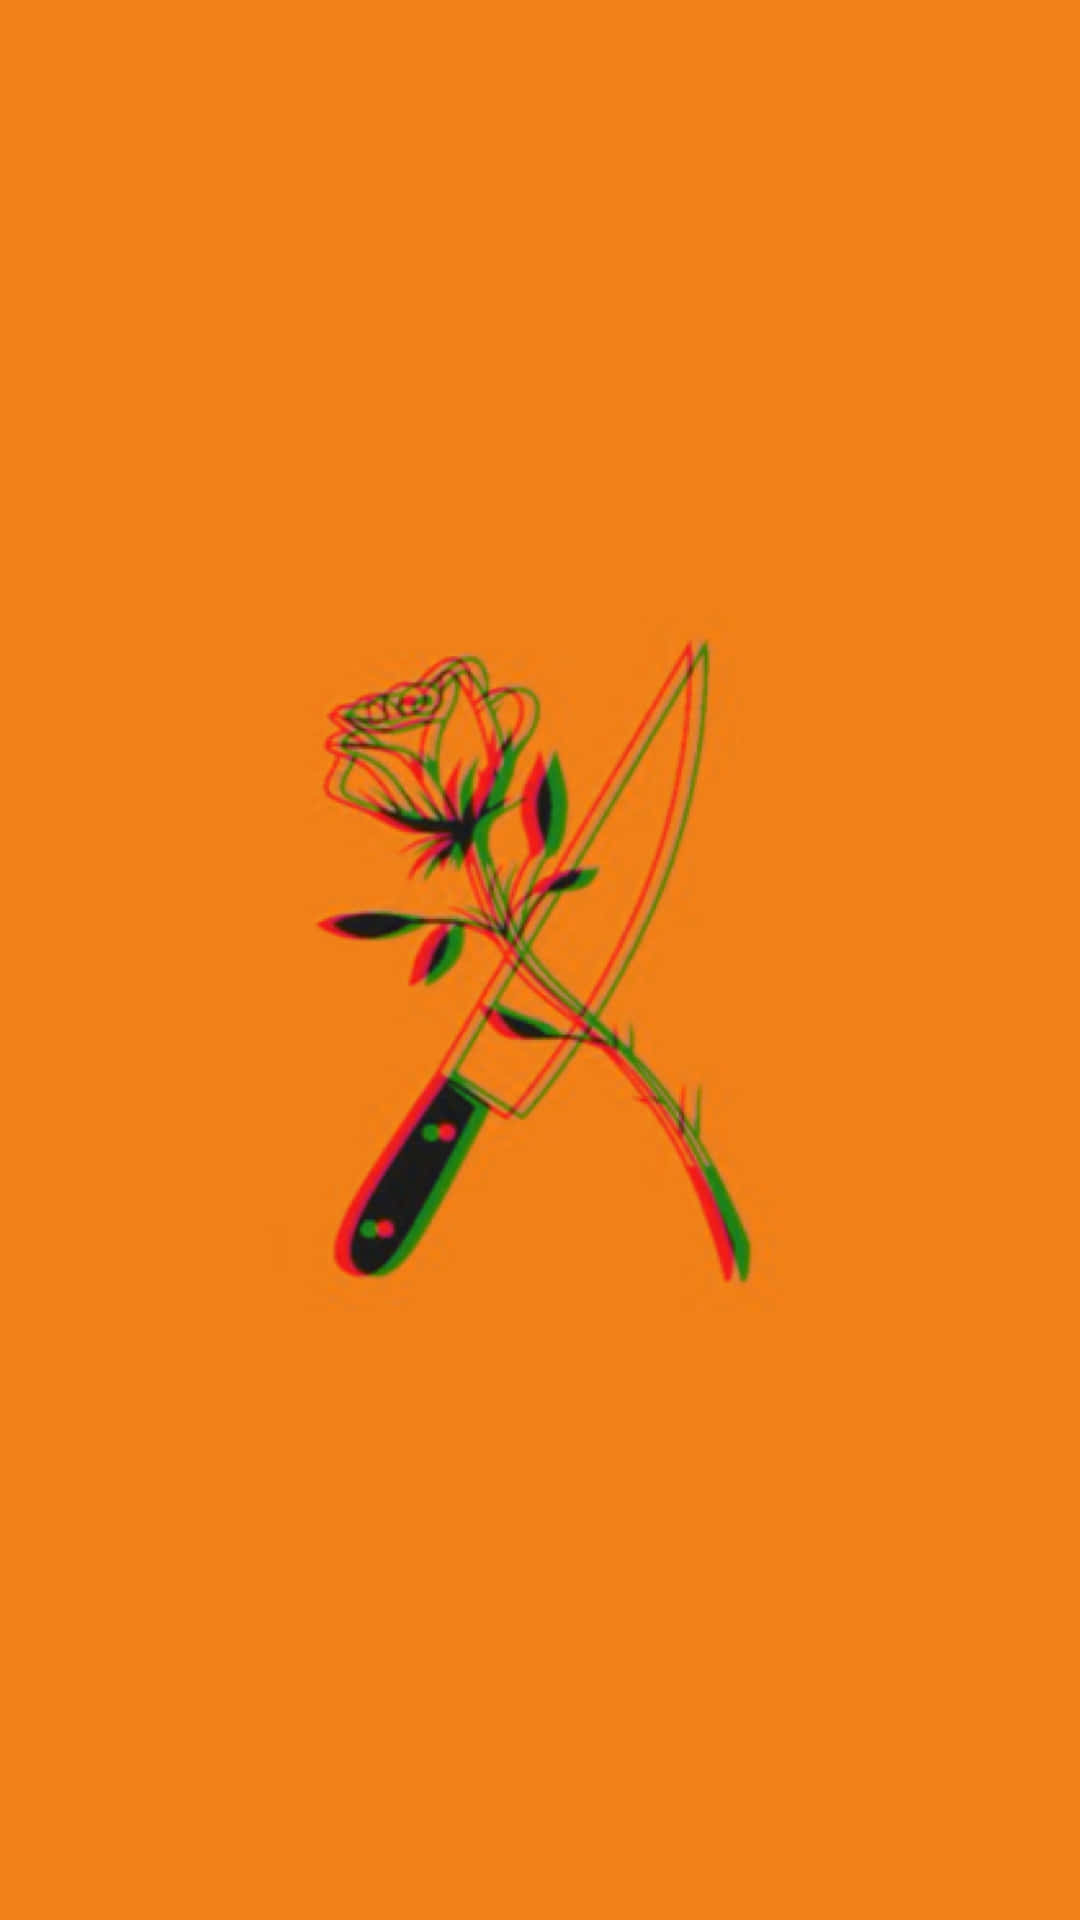 Einmesser Und Eine Rose Auf Einem Orangefarbenen Hintergrund.